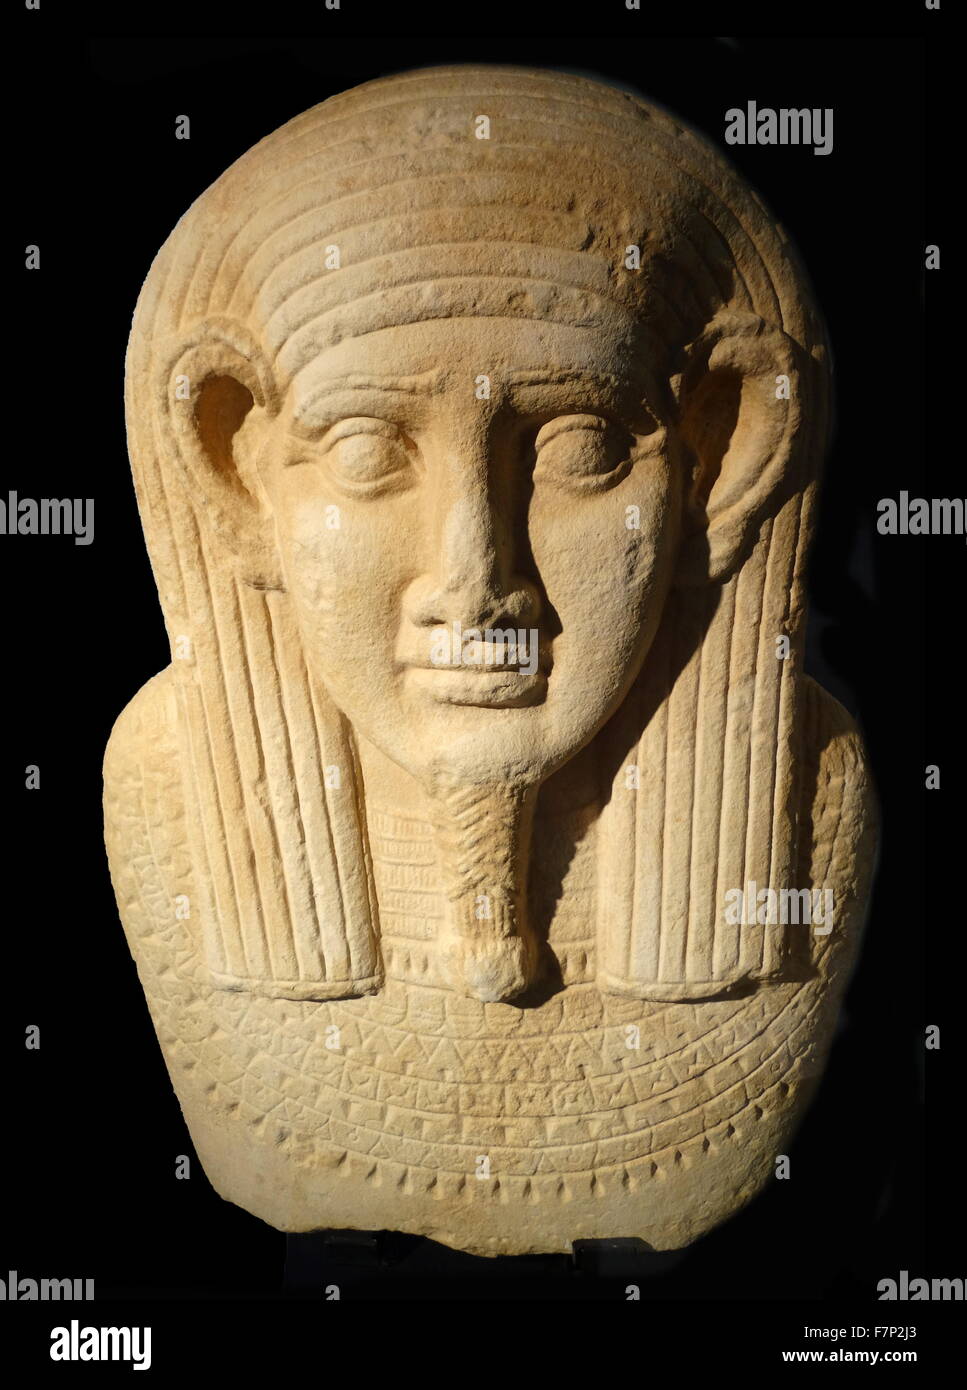 3.Ancient Egyptian Coffin. La pierre calcaire. Période ptolémaïque (304-30 av. Le sarcophage anthropomorphe a été largement utilisé à partir du Nouvel Empire à la fin de la civilisation pharaonique. Banque D'Images